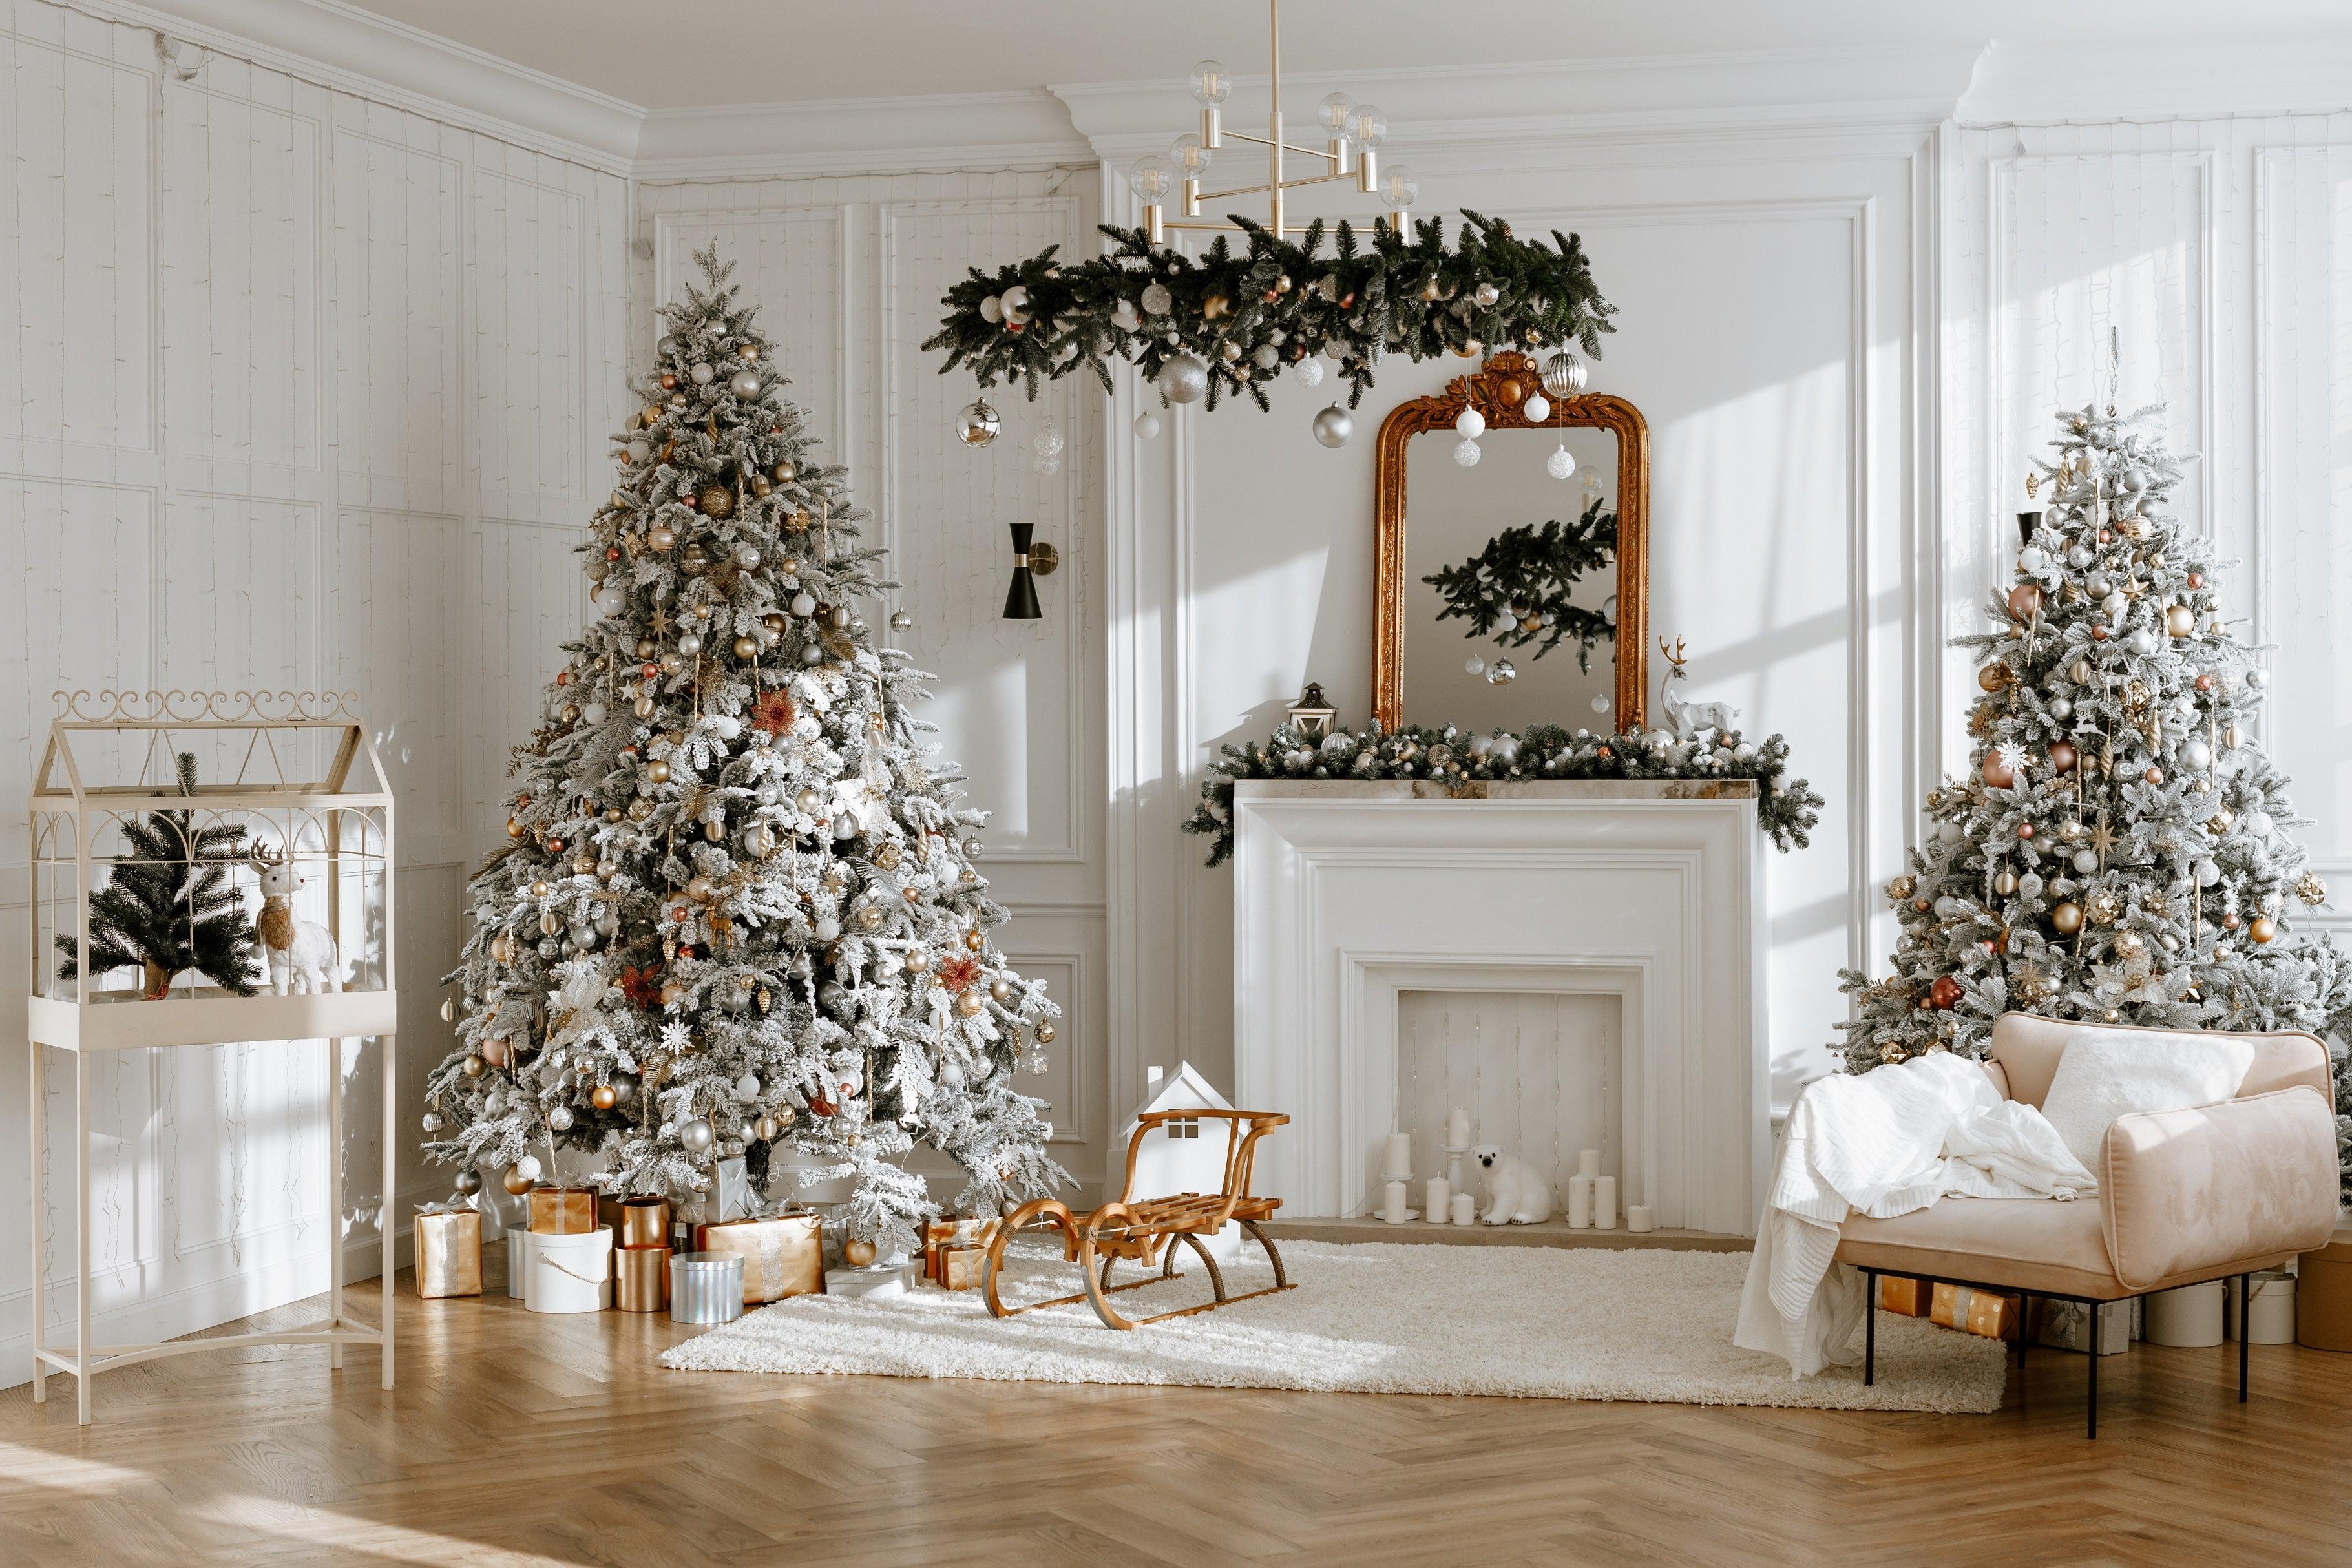 Les 10 façons de décorer son intérieur pour les fêtes de fin d'année -  Souffle D'intérieur